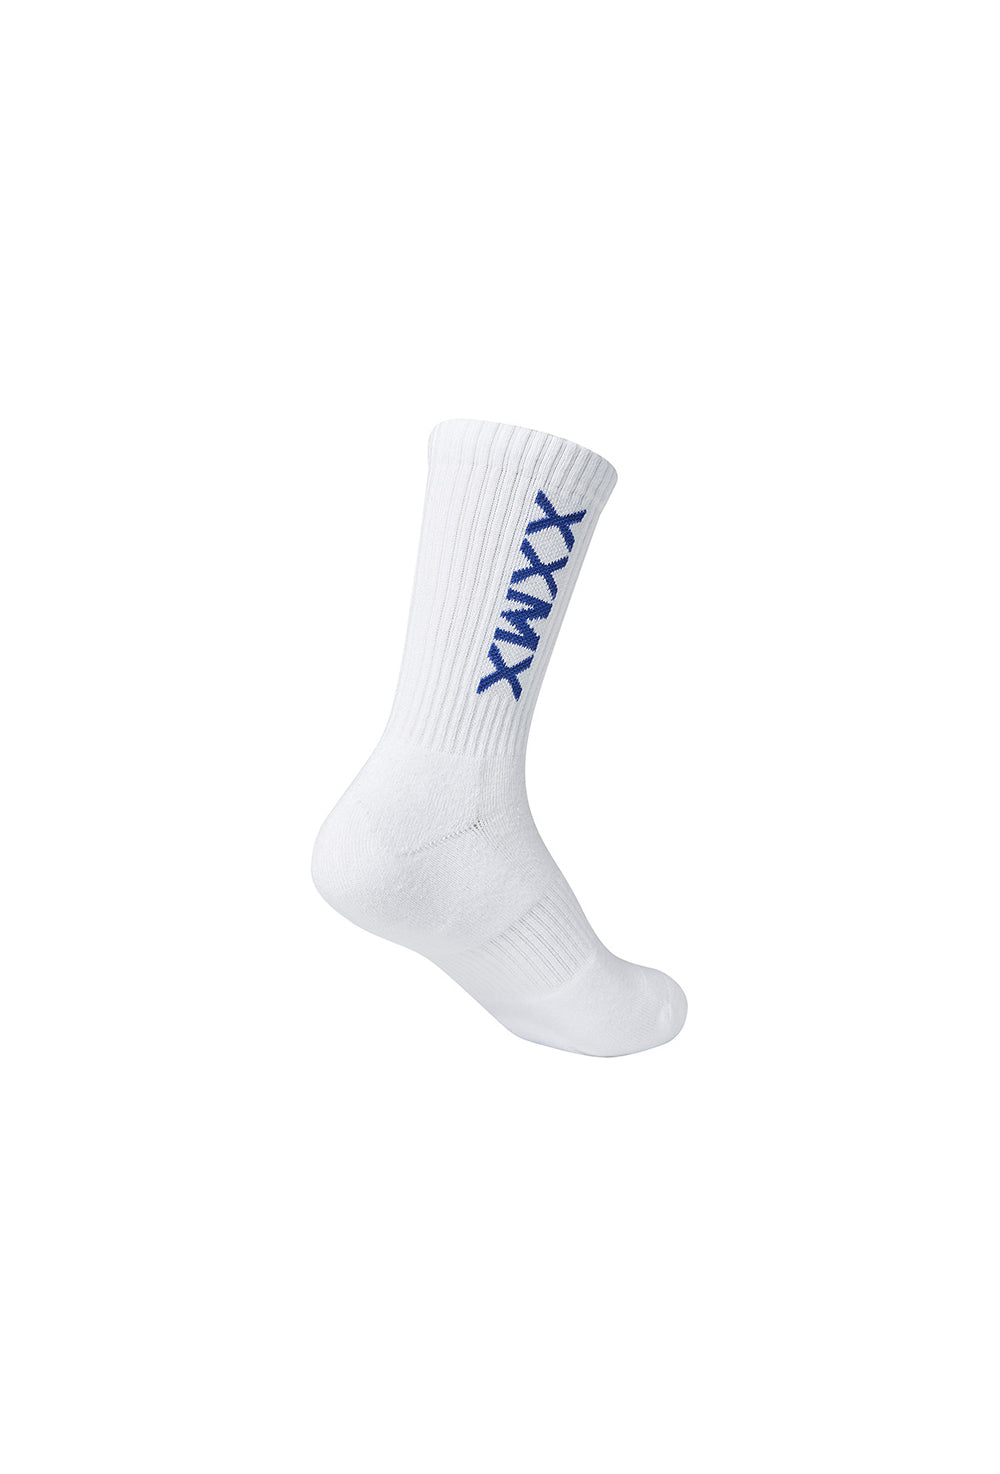 XEXYMIX Logo Crew Socks - Blue